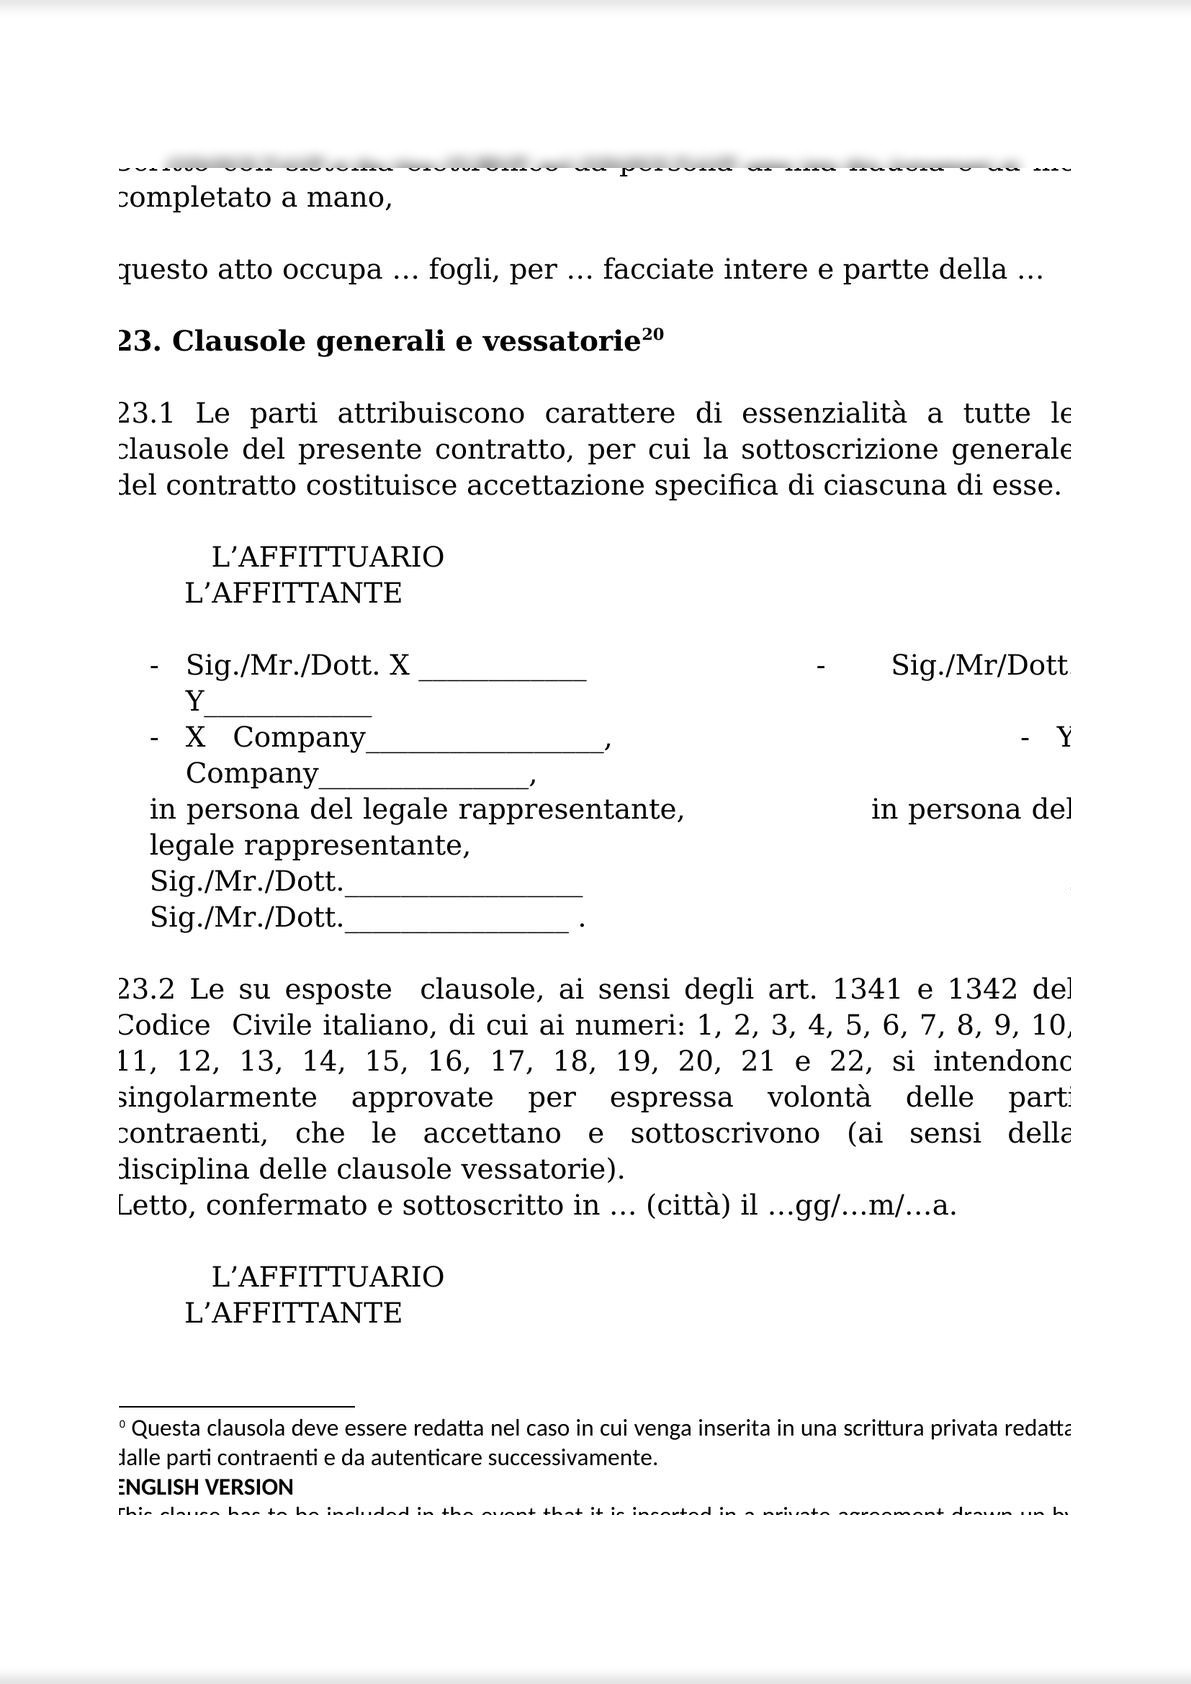 RENTAL AGREEMENT  FOR THE COMPANY AND BUSINESS UNITS / CONTRATTO DI AFFITTO DI AZIENDA O DI UN RAMO DI ESSA-10